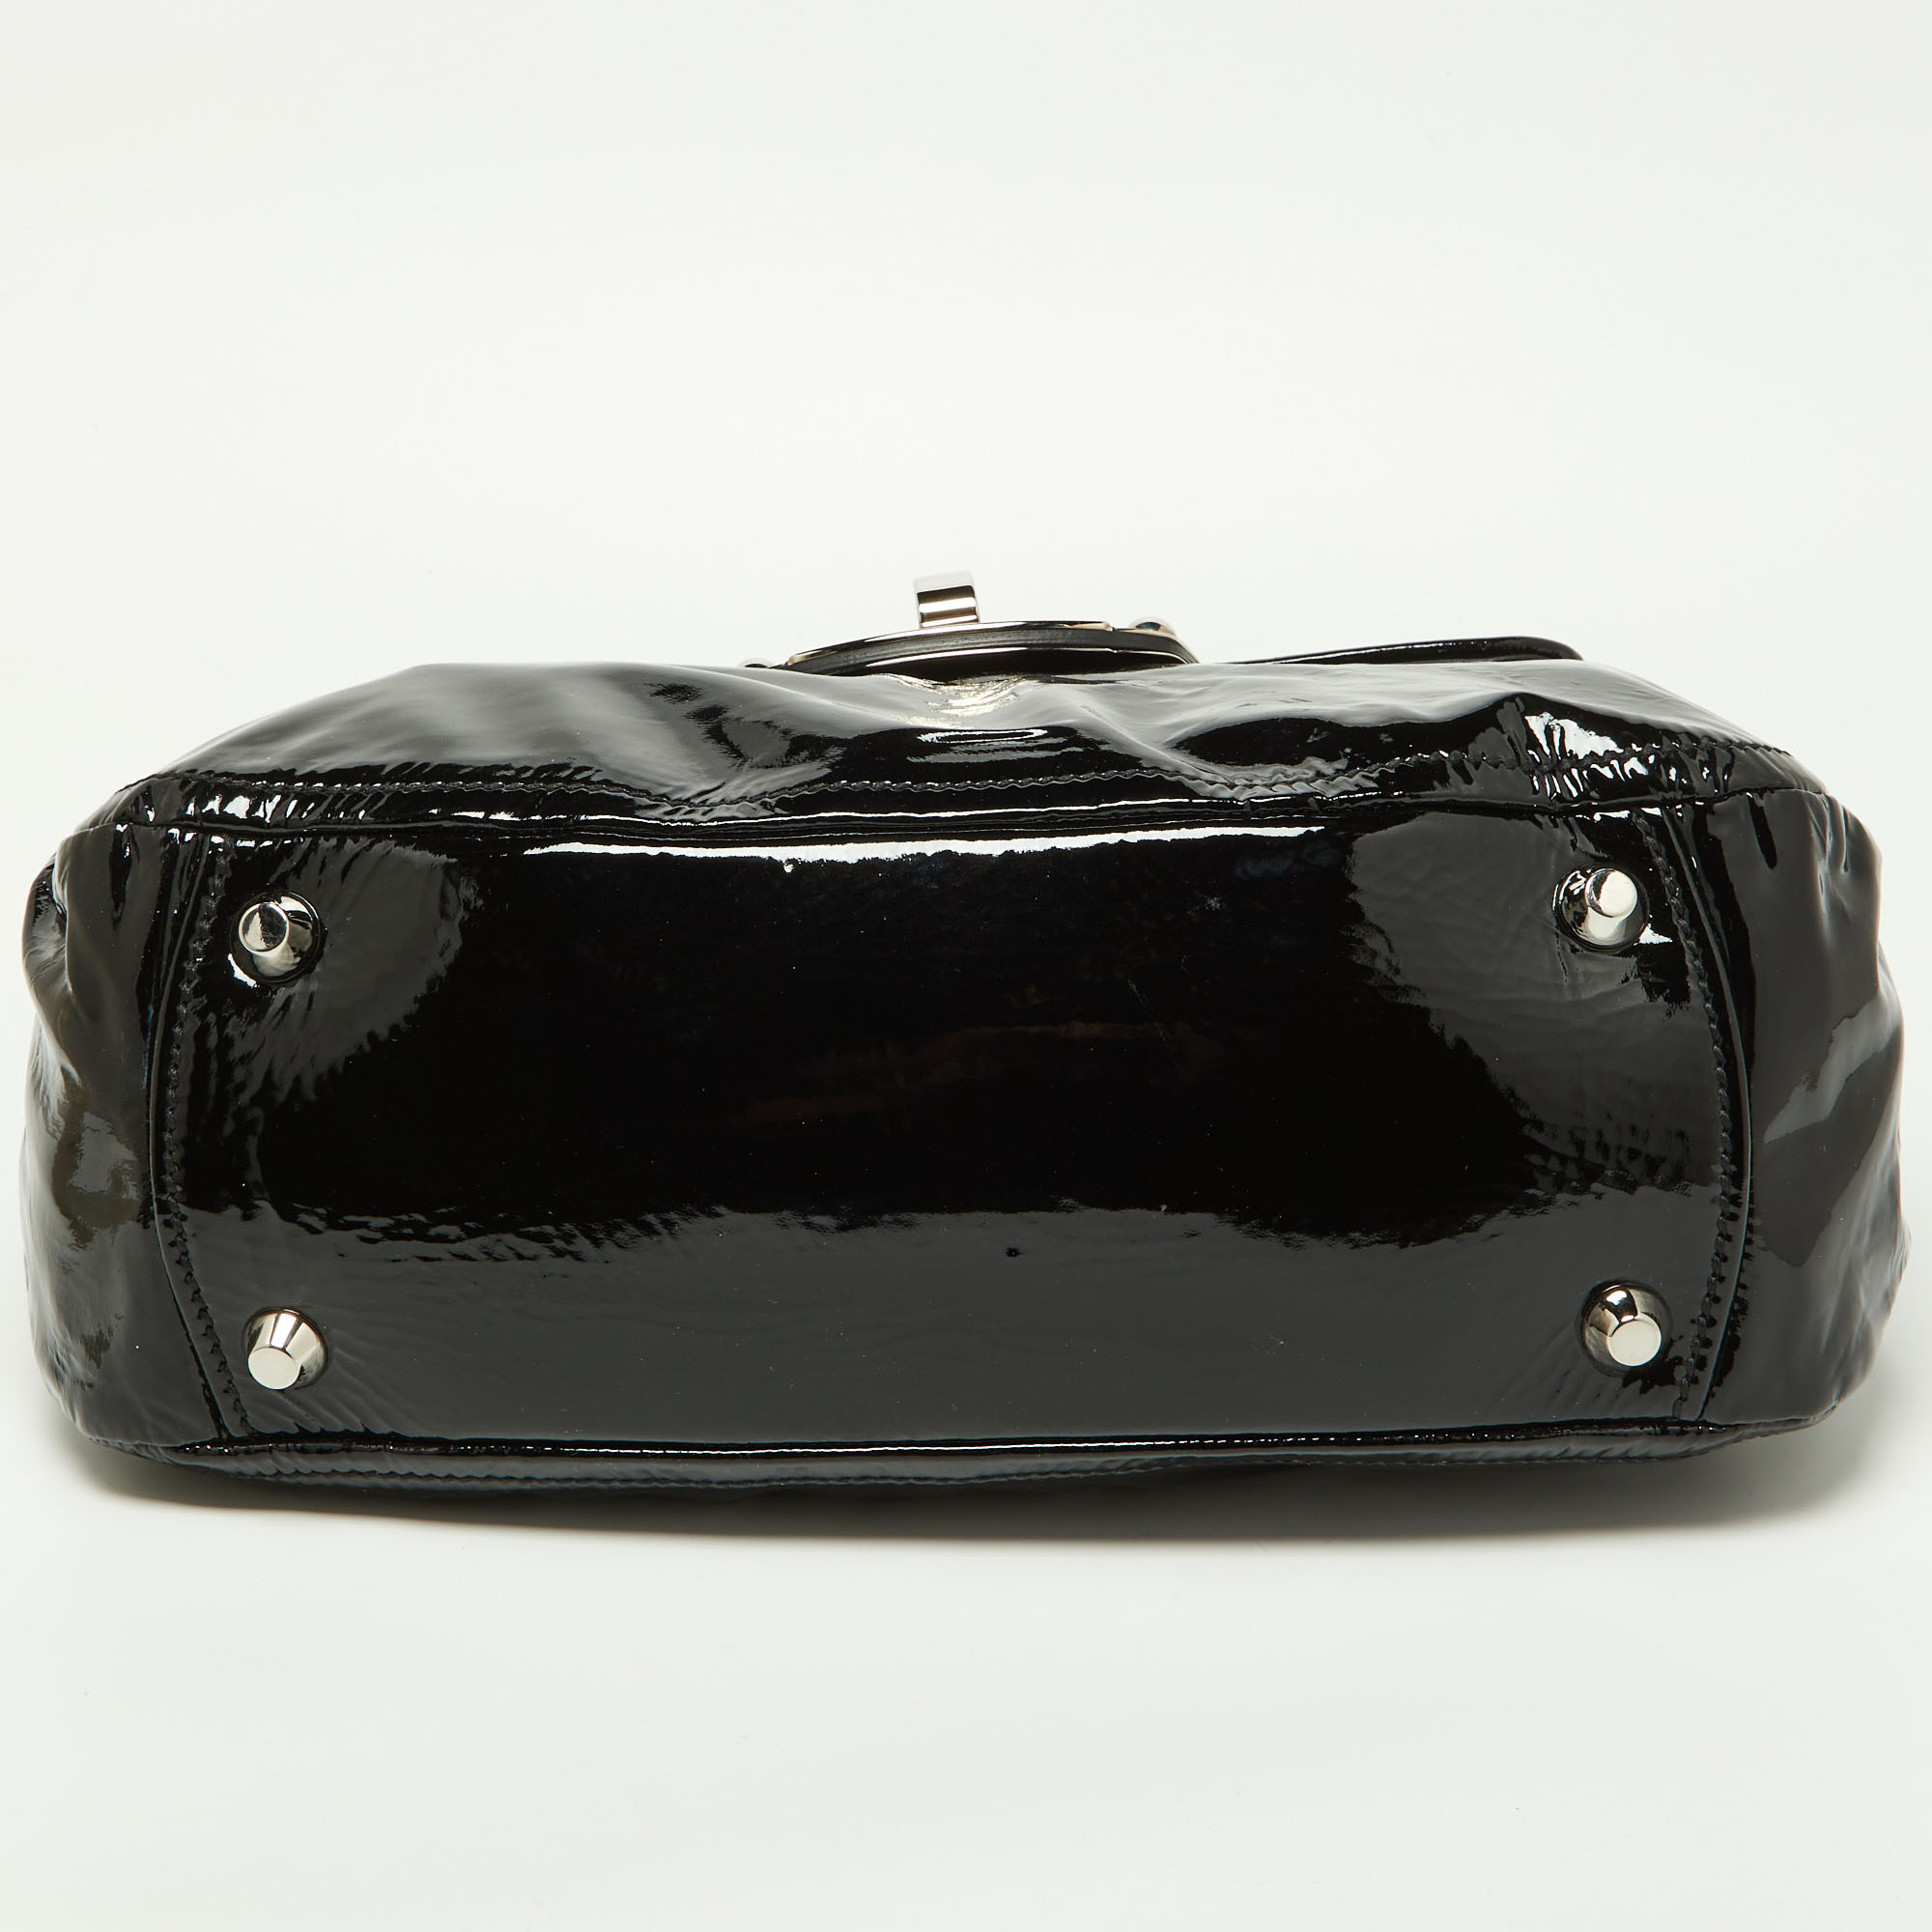 Miu Miu Black Patent Leather Turnlock Top Handle Bag